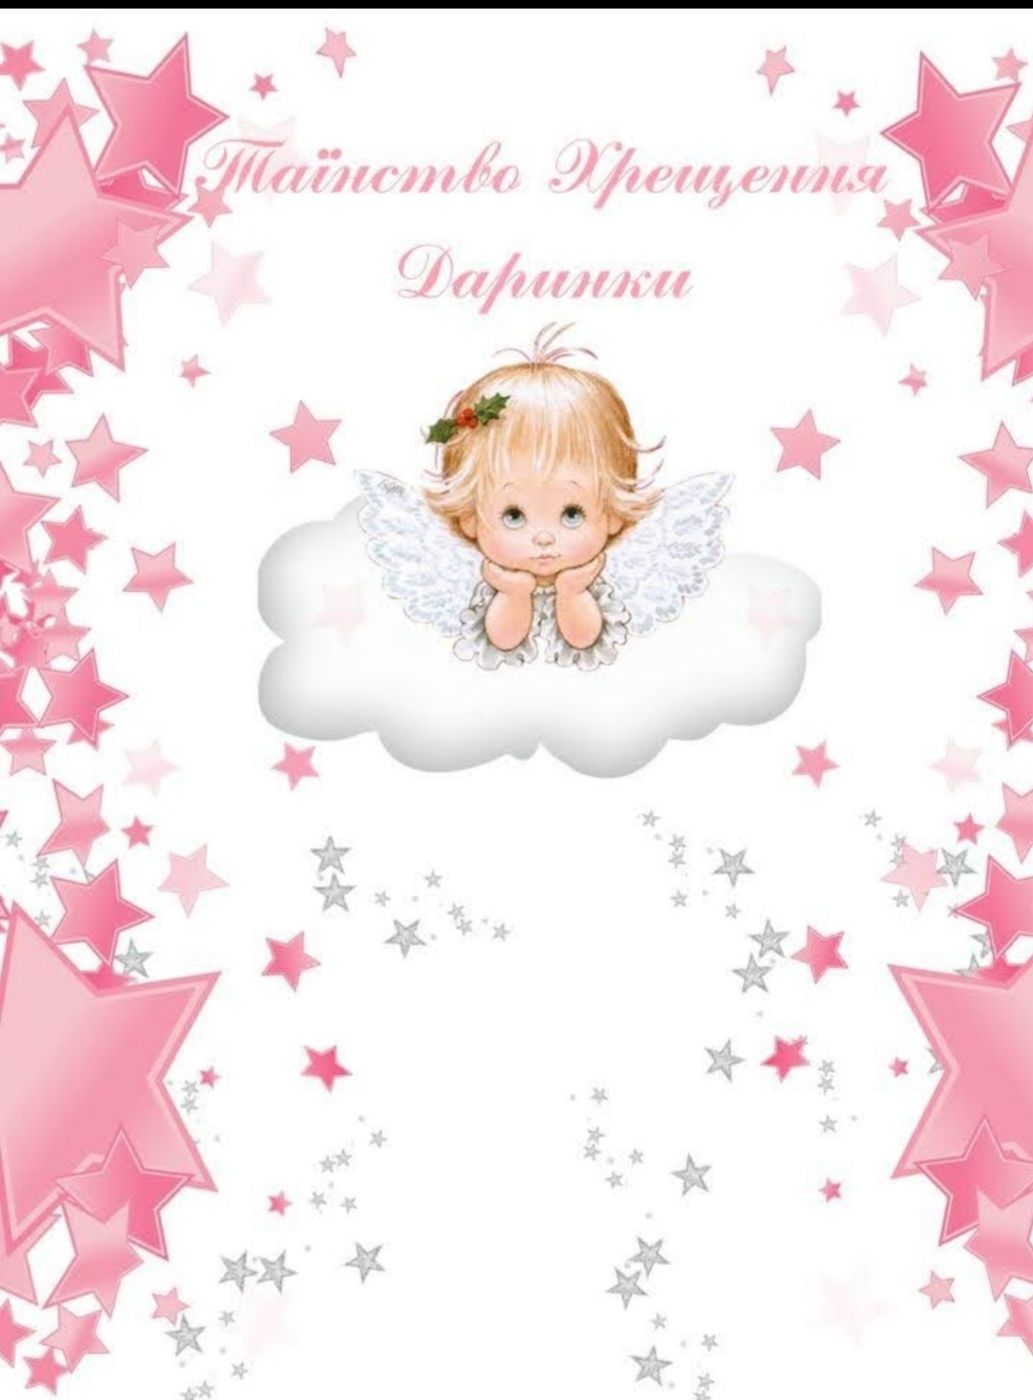 Іменний плакат на хрестини дівчинки Даринки